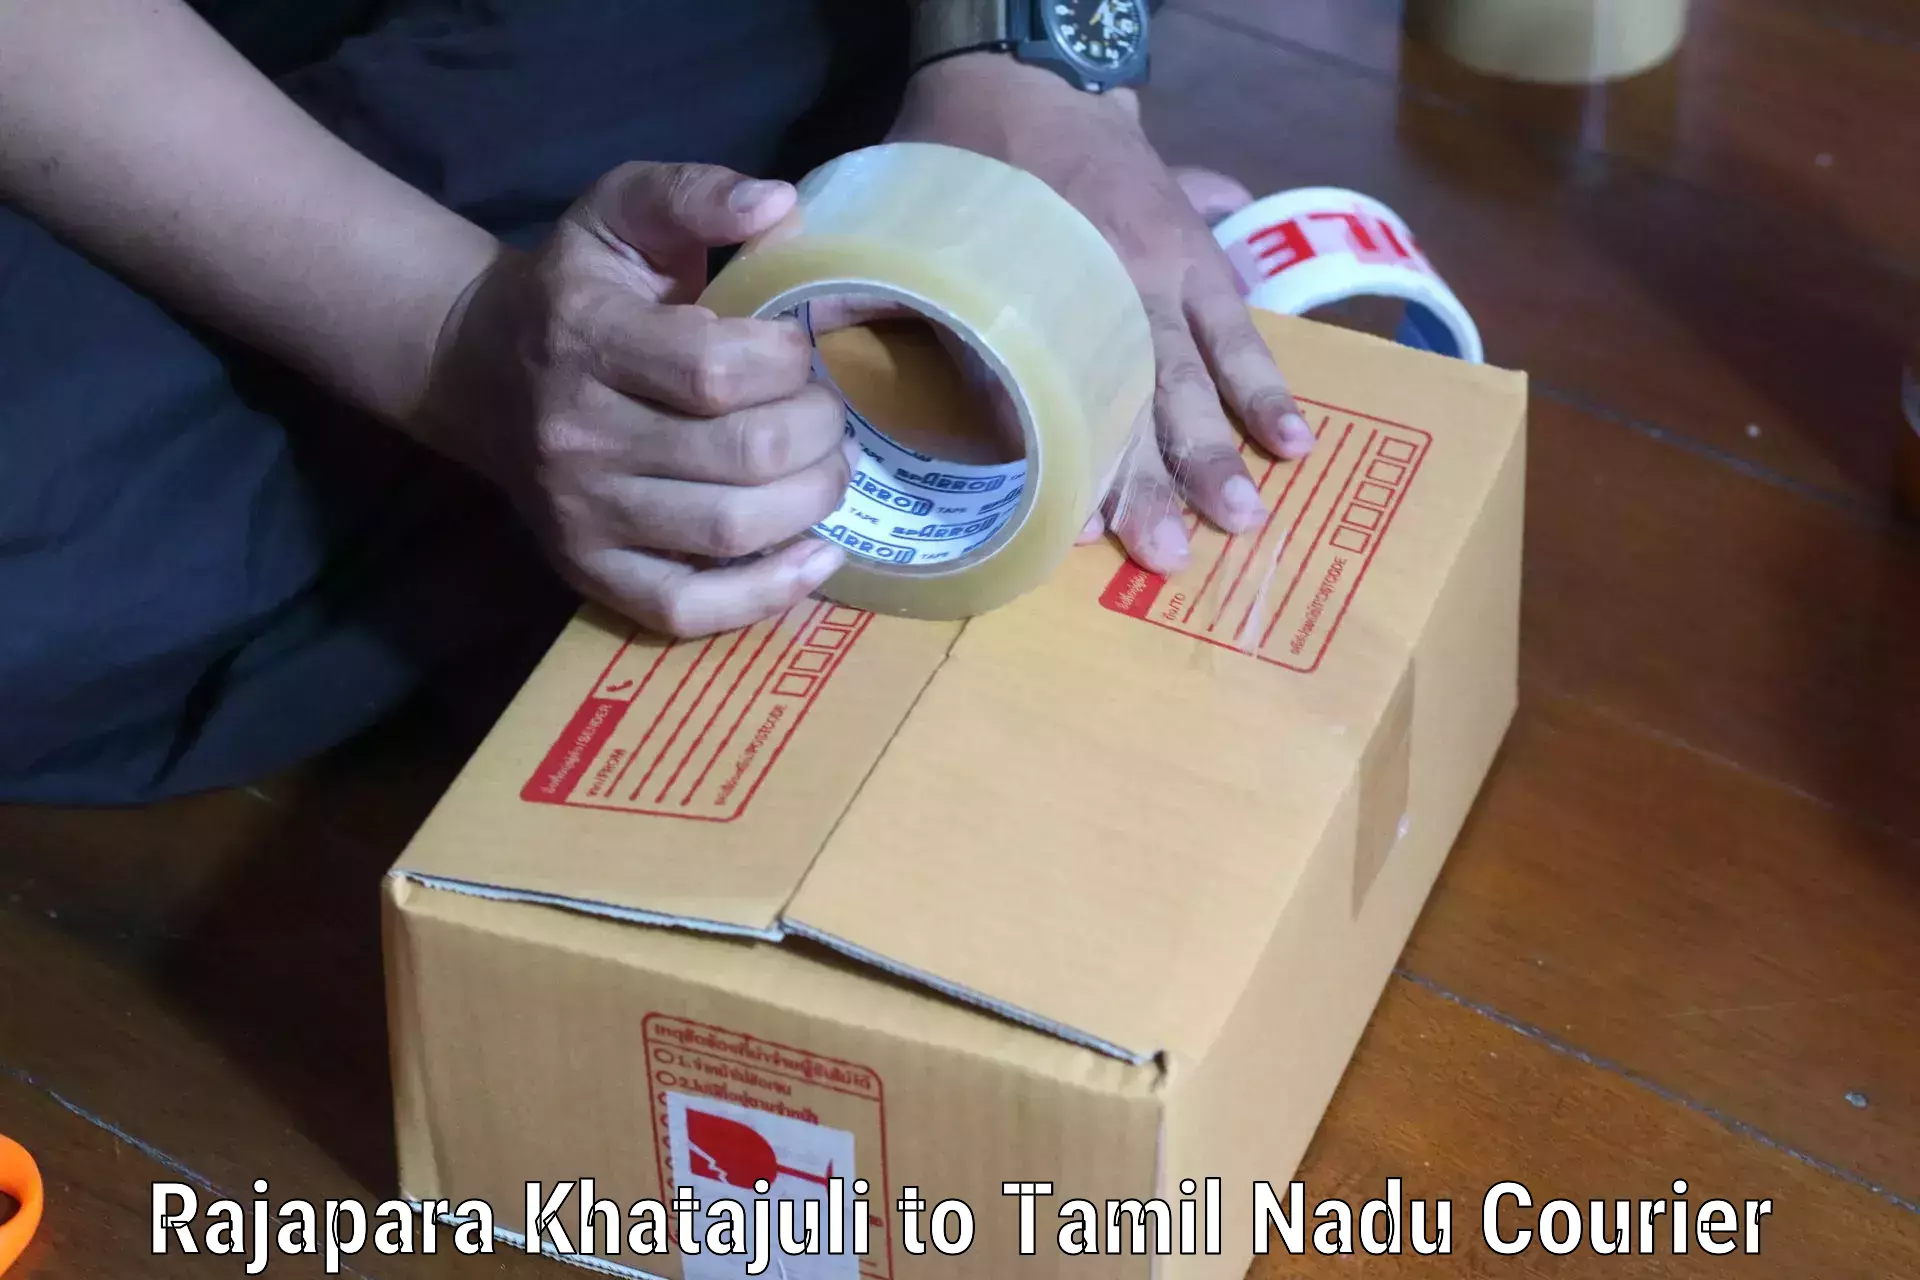 Special handling courier Rajapara Khatajuli to Arasaradi